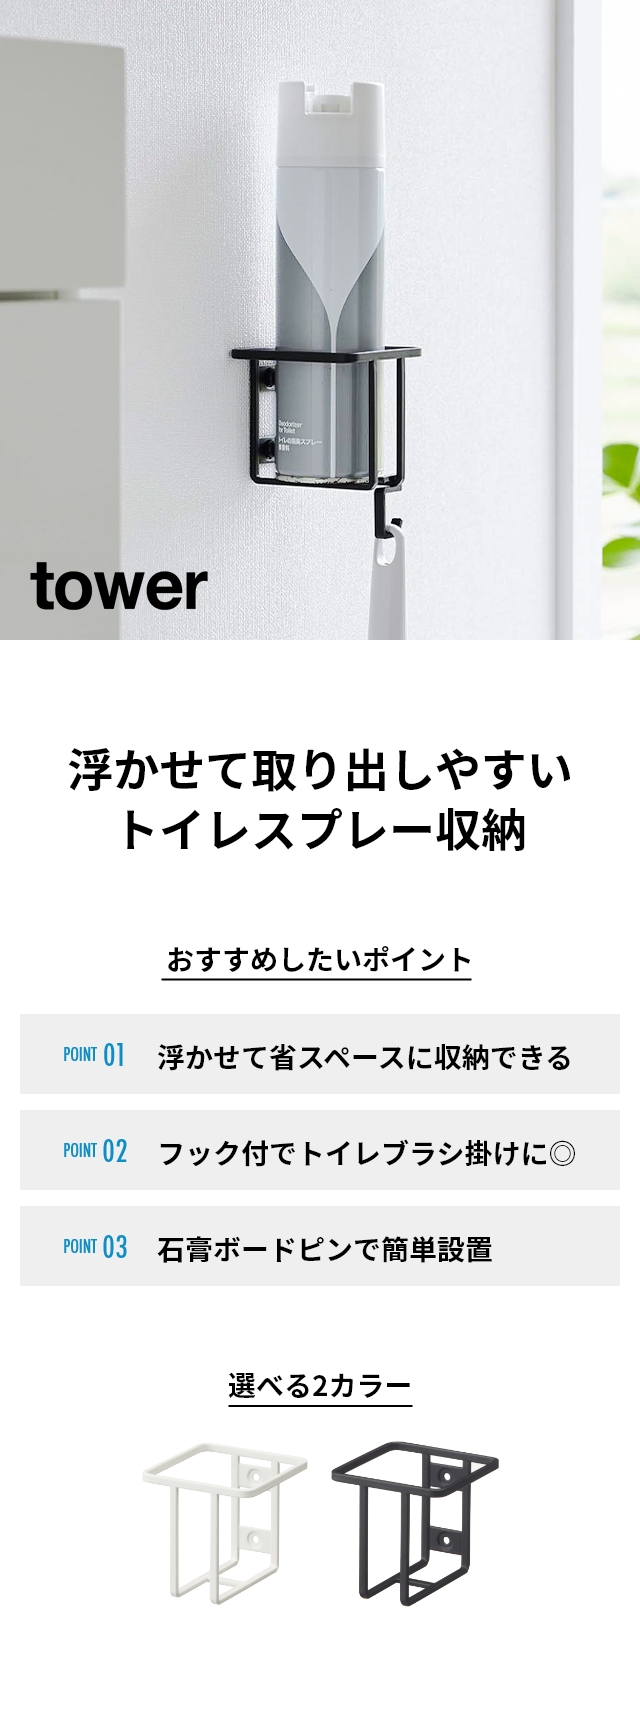 tower (タワー) ウォールスプレーボトルホルダー